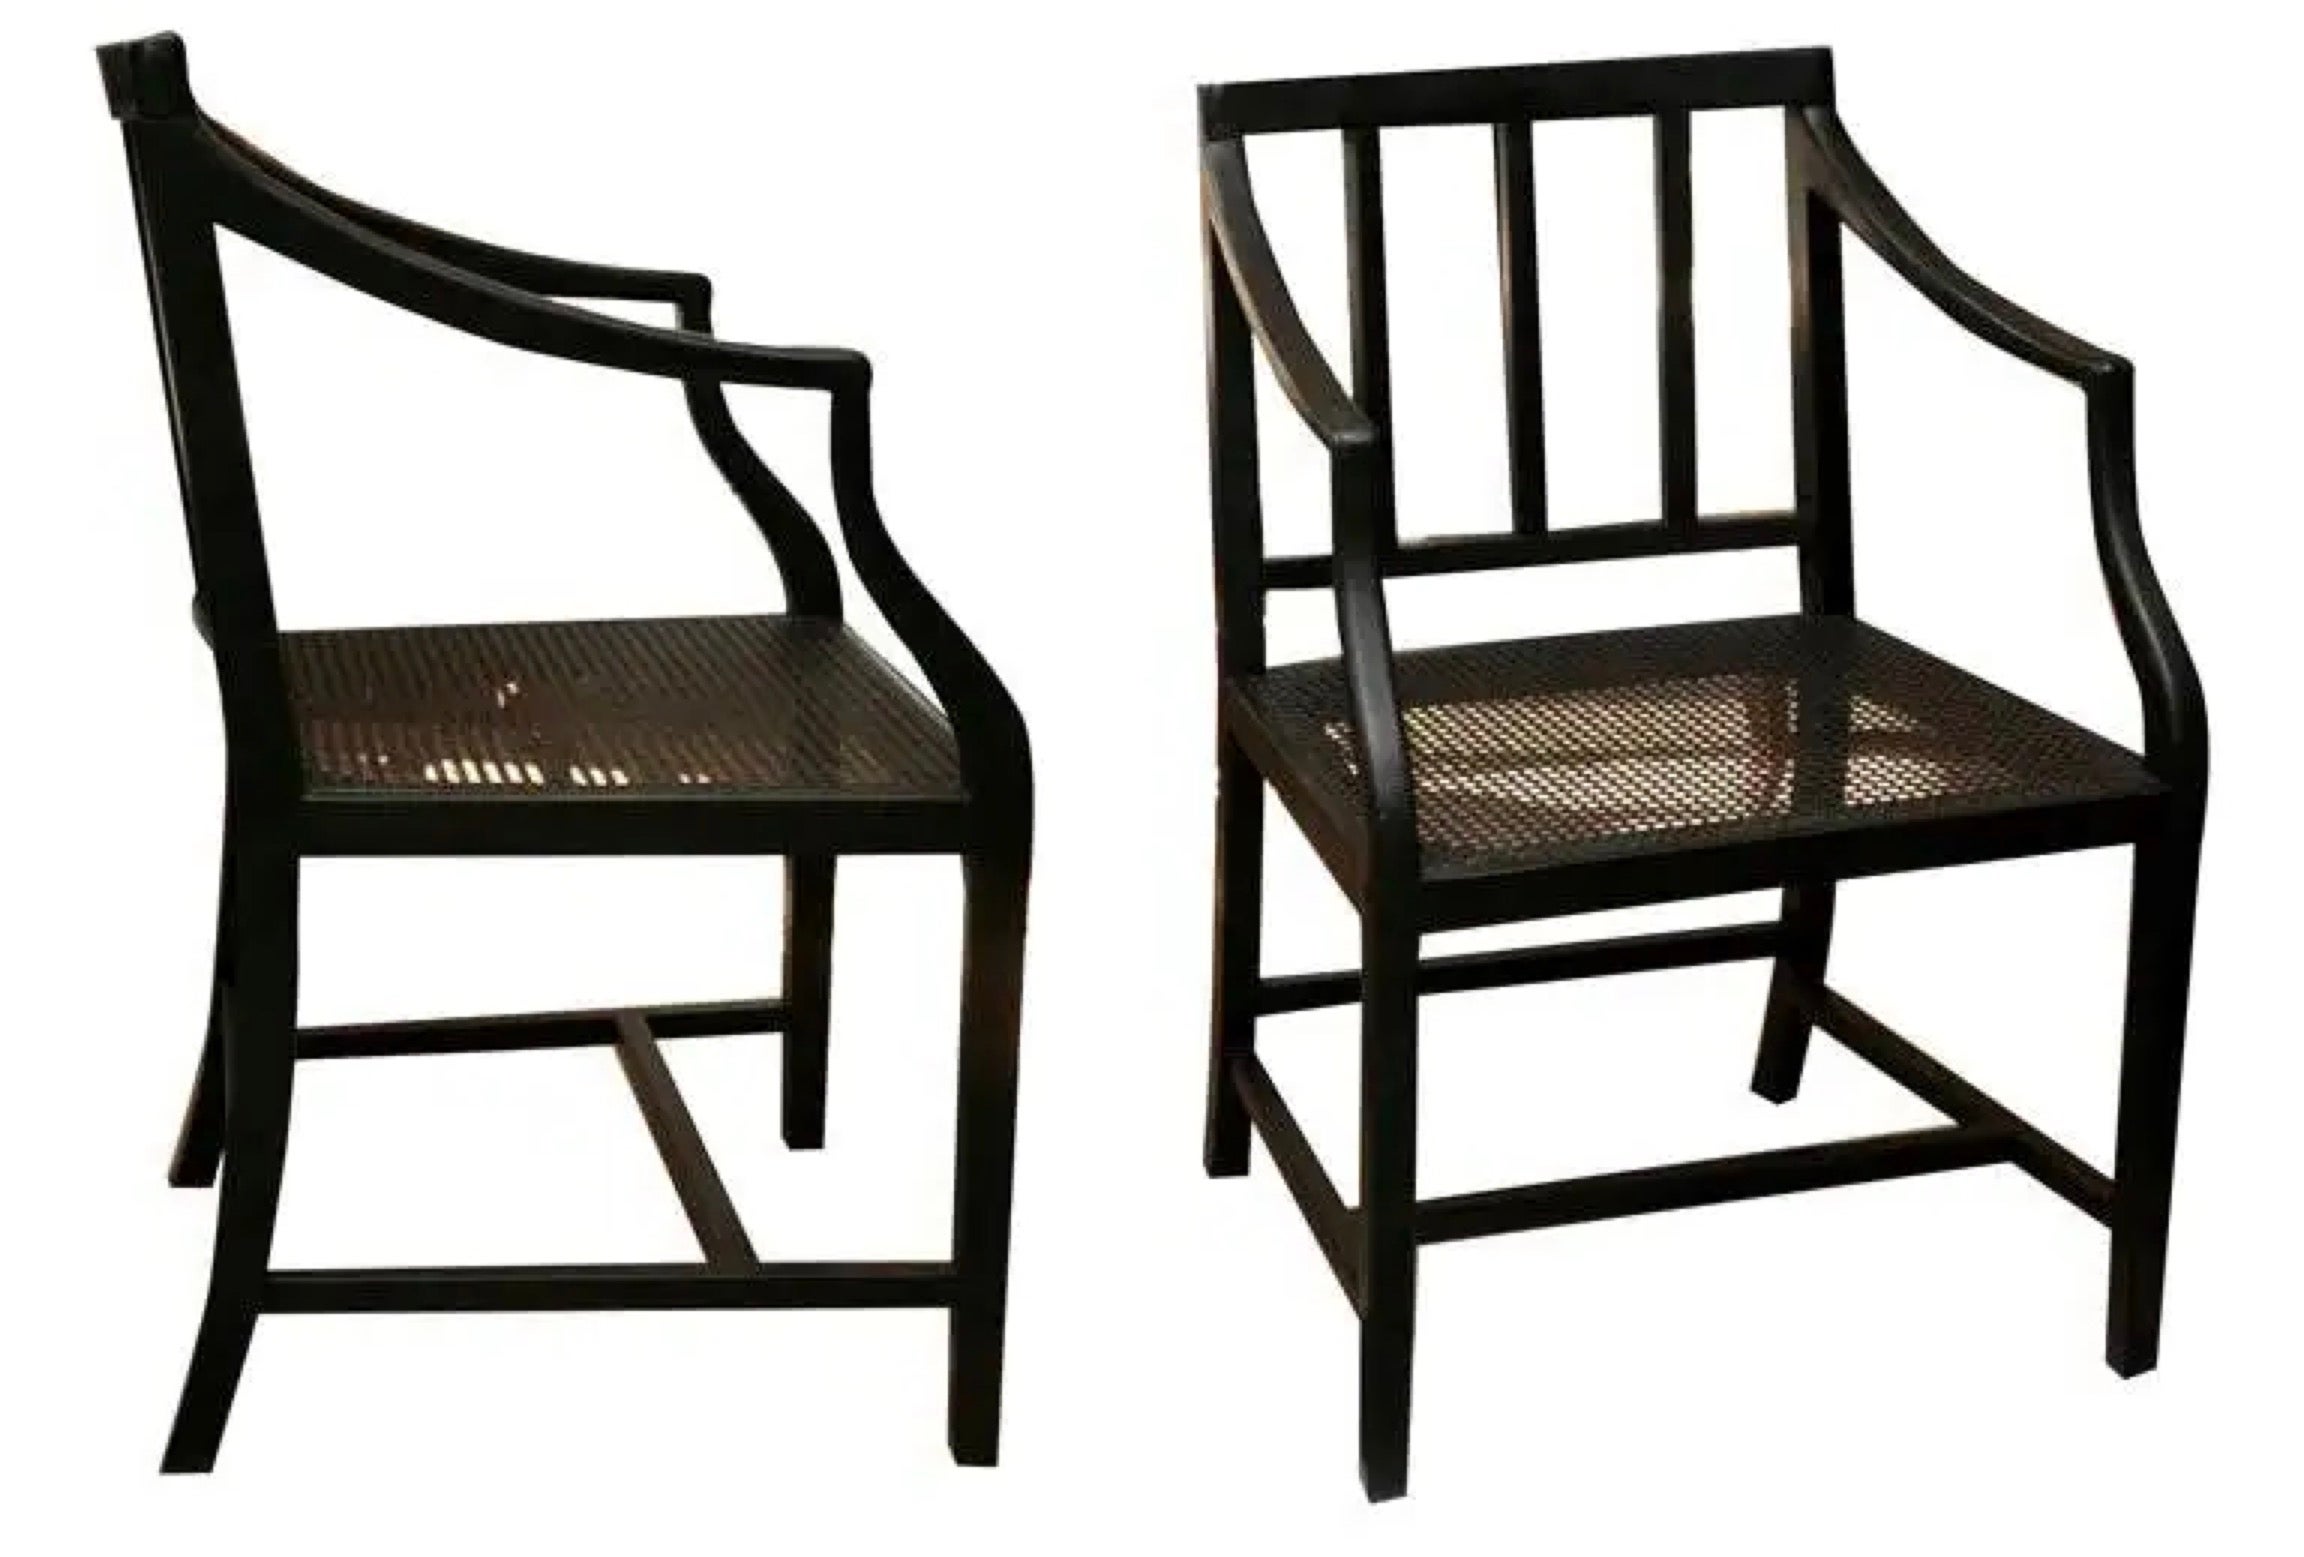 Fabriquées sur commande, ces chaises ont été conçues à l'origine pour le film 